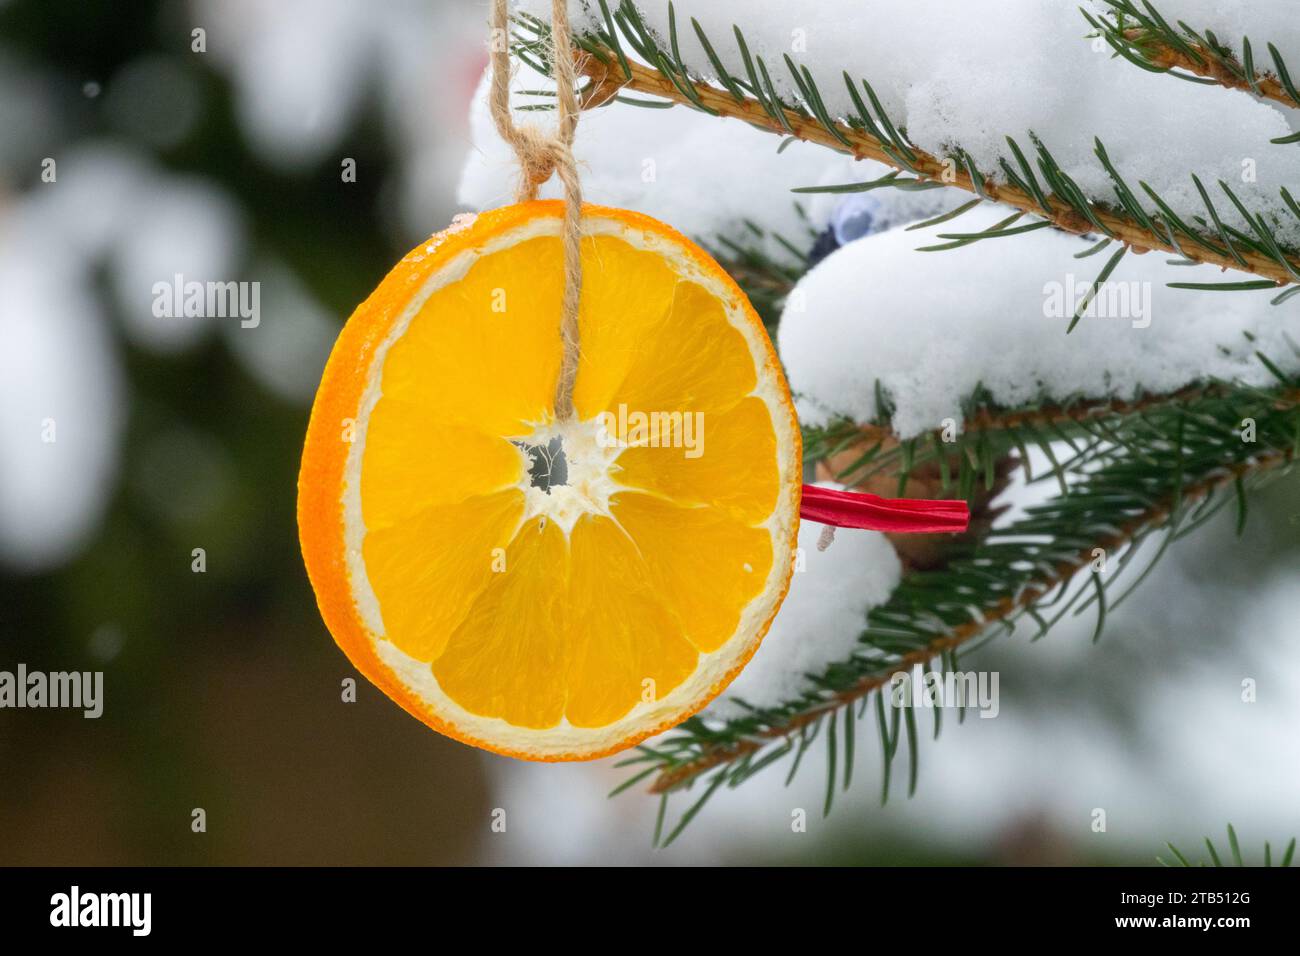 Ornement rond de Noël, Orange séché, Décoration, suspendu, couvert de neige, décoration extérieure de Noël sur l'arbre à l'extérieur Banque D'Images